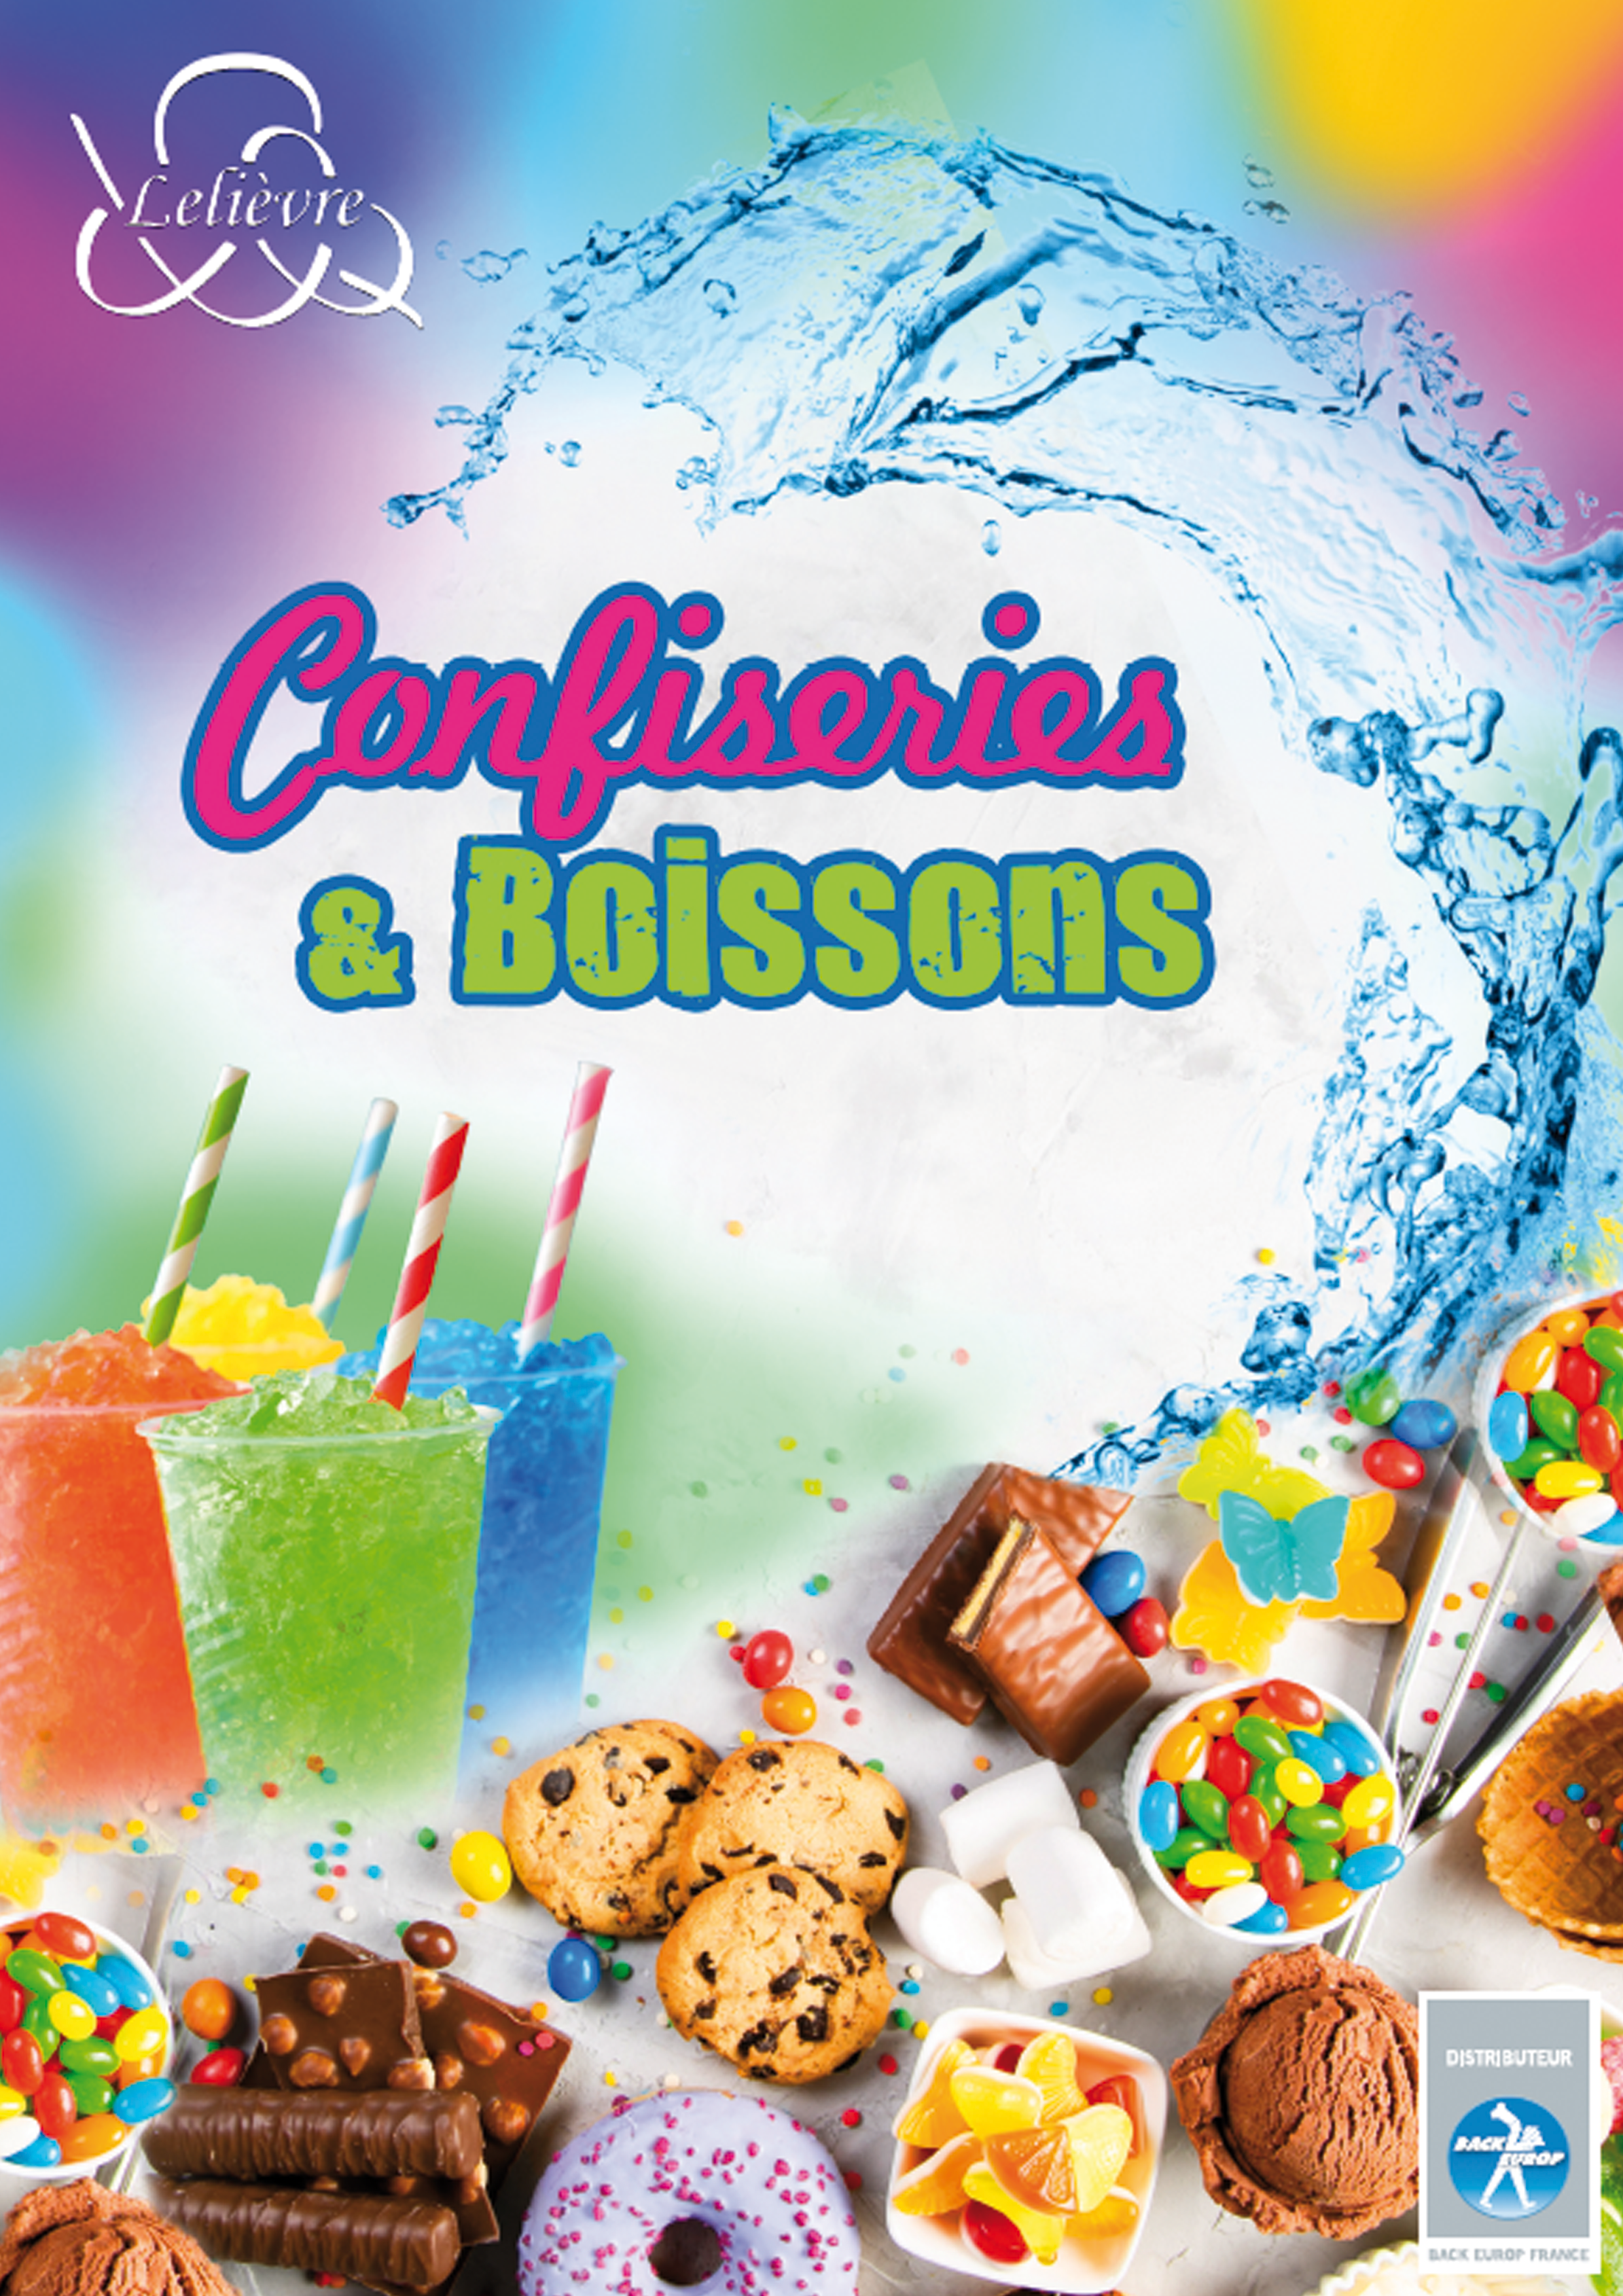 Catalogue Confiseries & Boissons